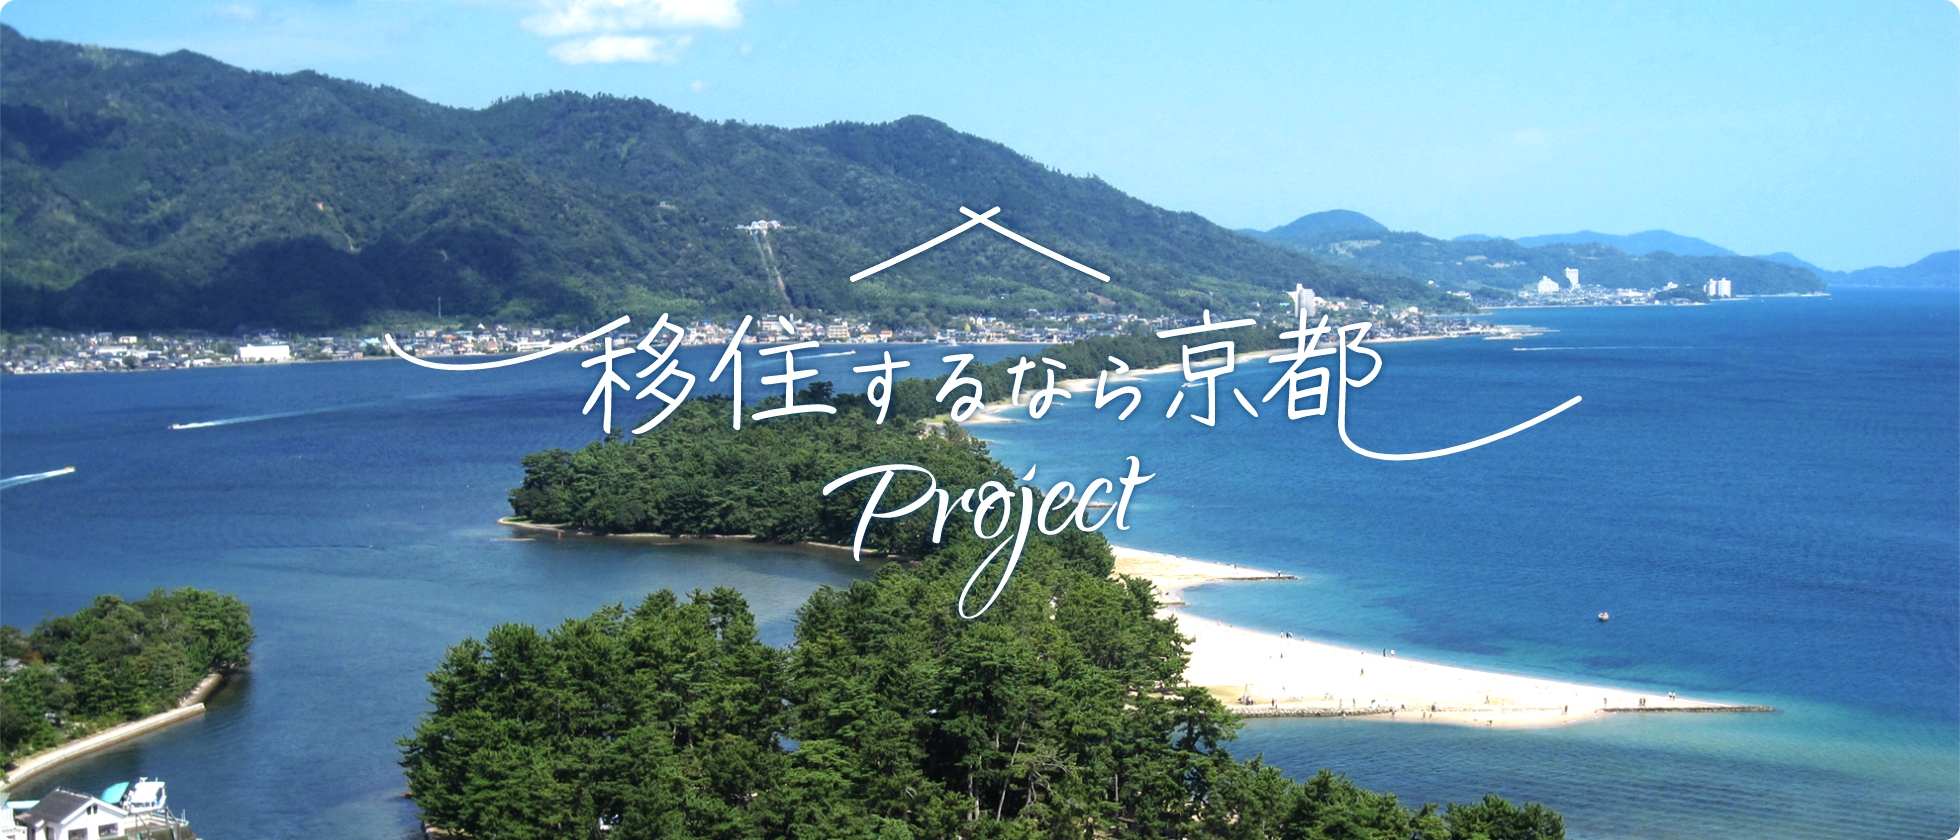 移住するなら京都プロジェクト